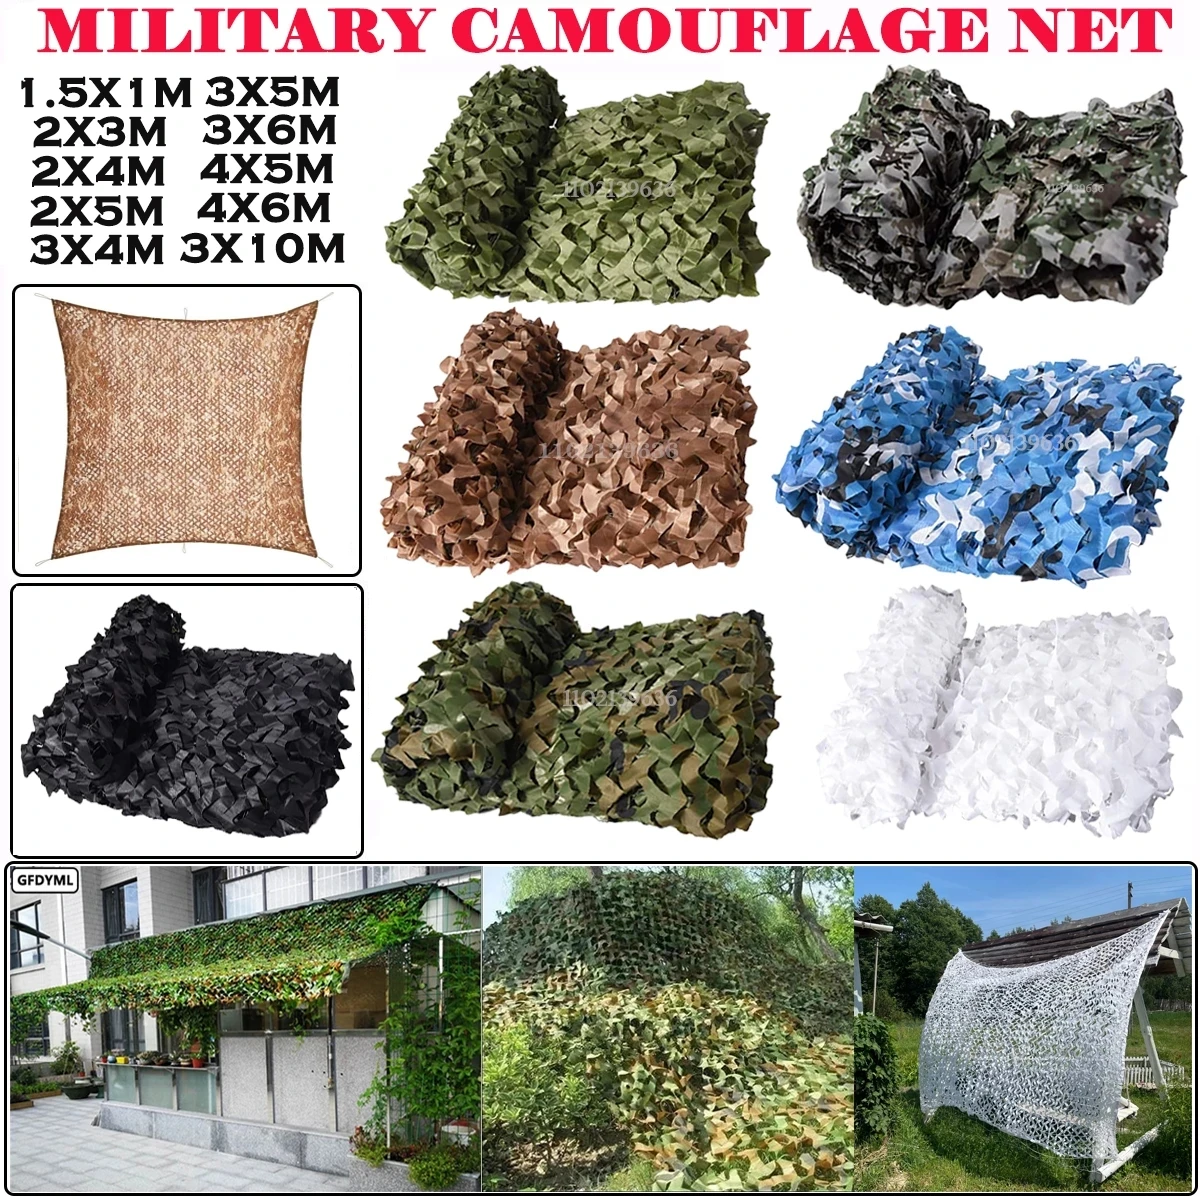 

Military camouflage net hunting camouflage net garden gazebo net car awning white green black jungle desert color